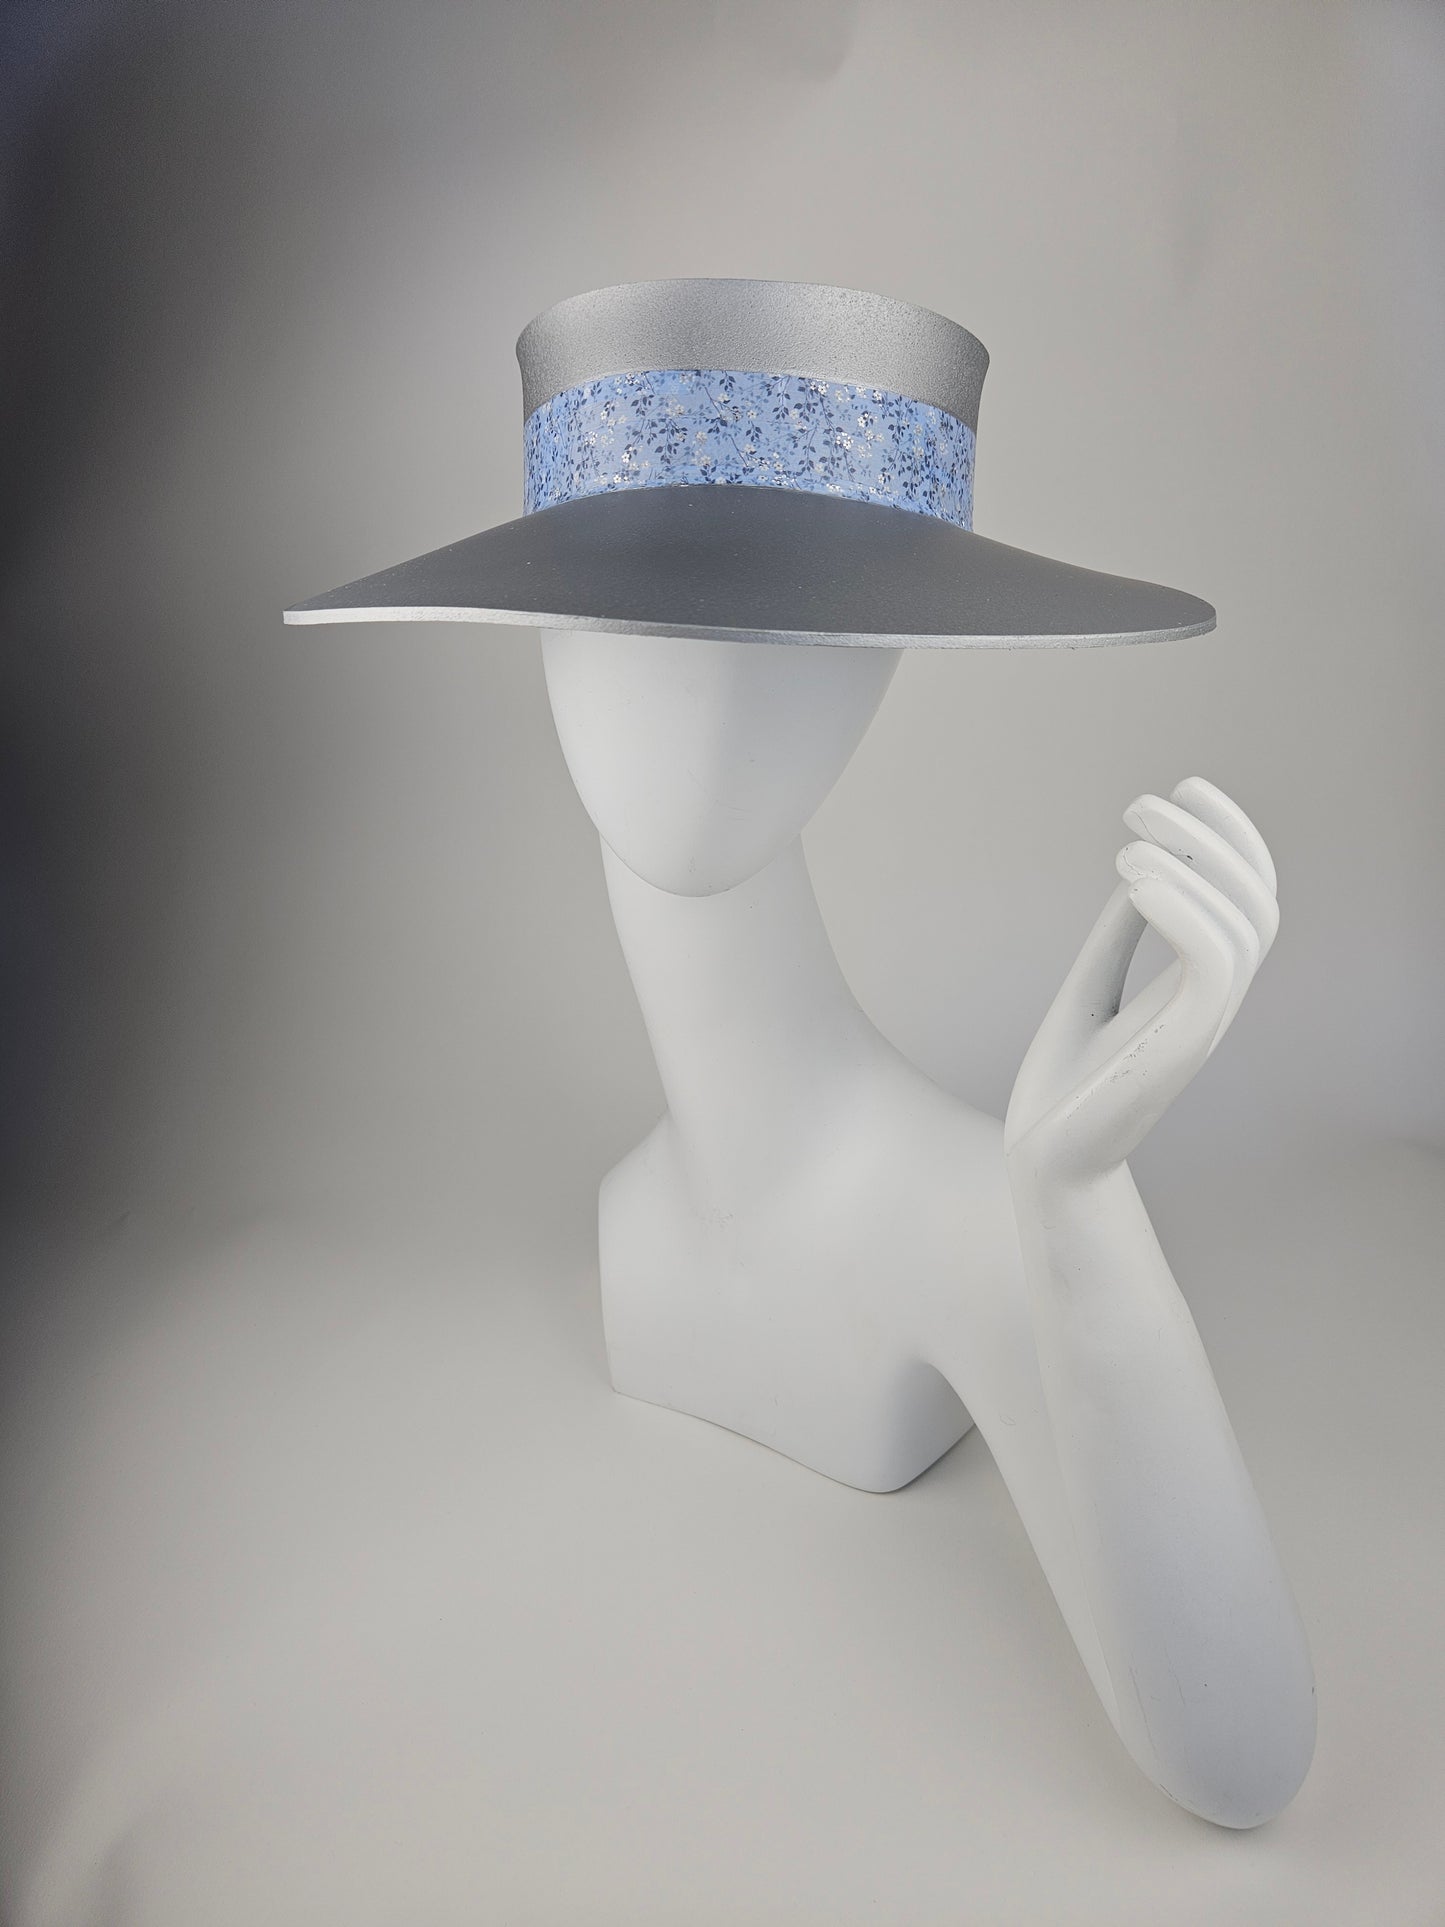 Trending Silver Audrey Sun Visor Hat with Lovely Light Blue Floral Band: 1950s, Walks, Brunch, Asian, Golf, Summer, Church, No Headache, Pool, Beach